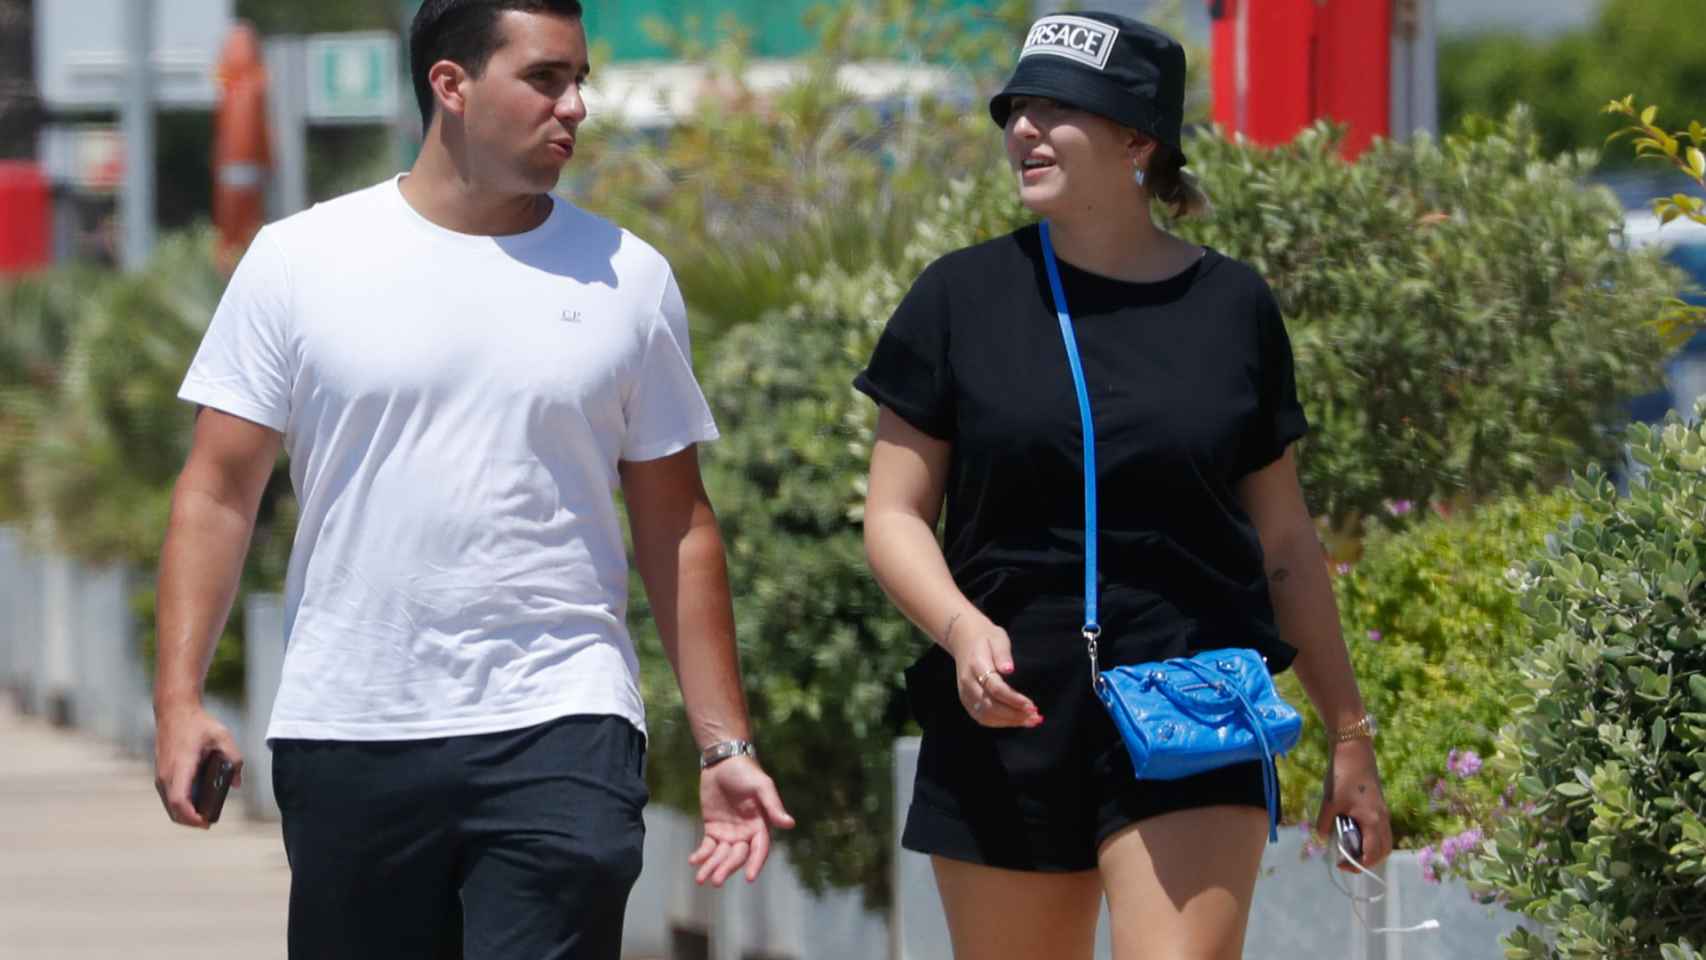 Alba Díaz se mostró sonriente durante el paseo con su amigo.